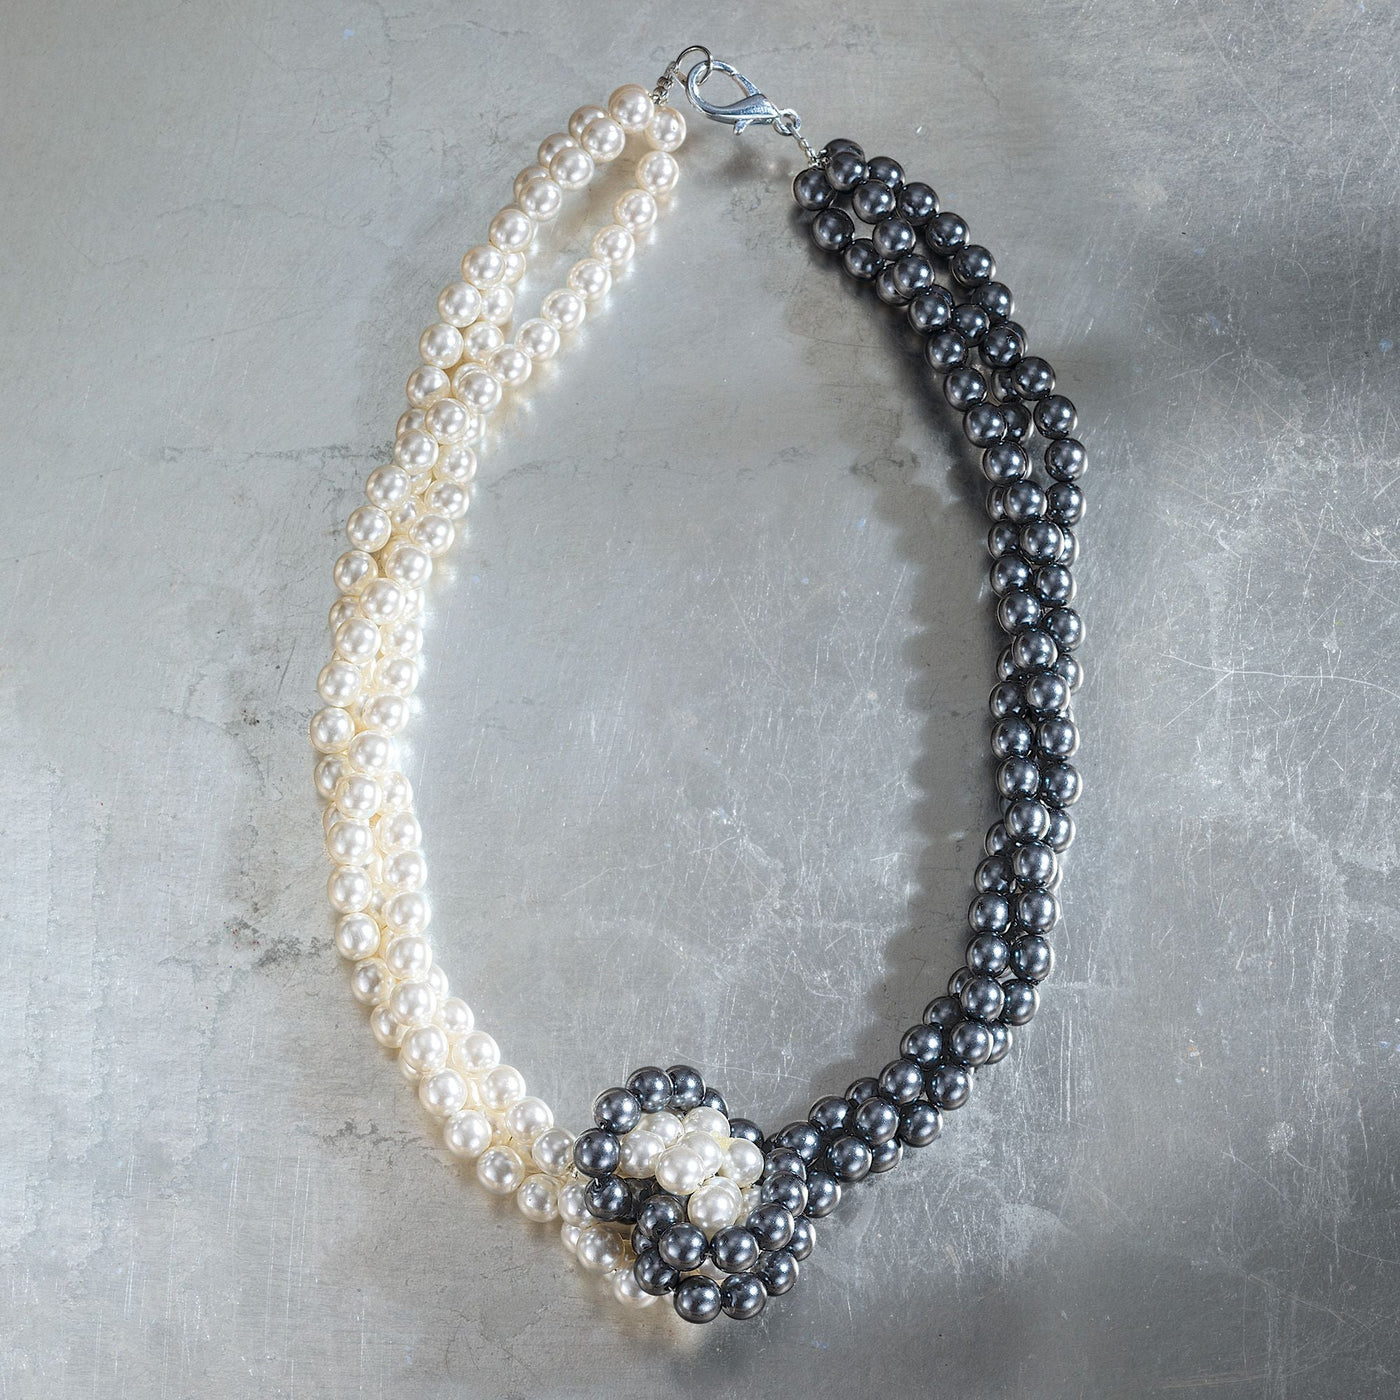 Opposites Attract Murano Glass Pearl Necklace | Uno Alla Volta